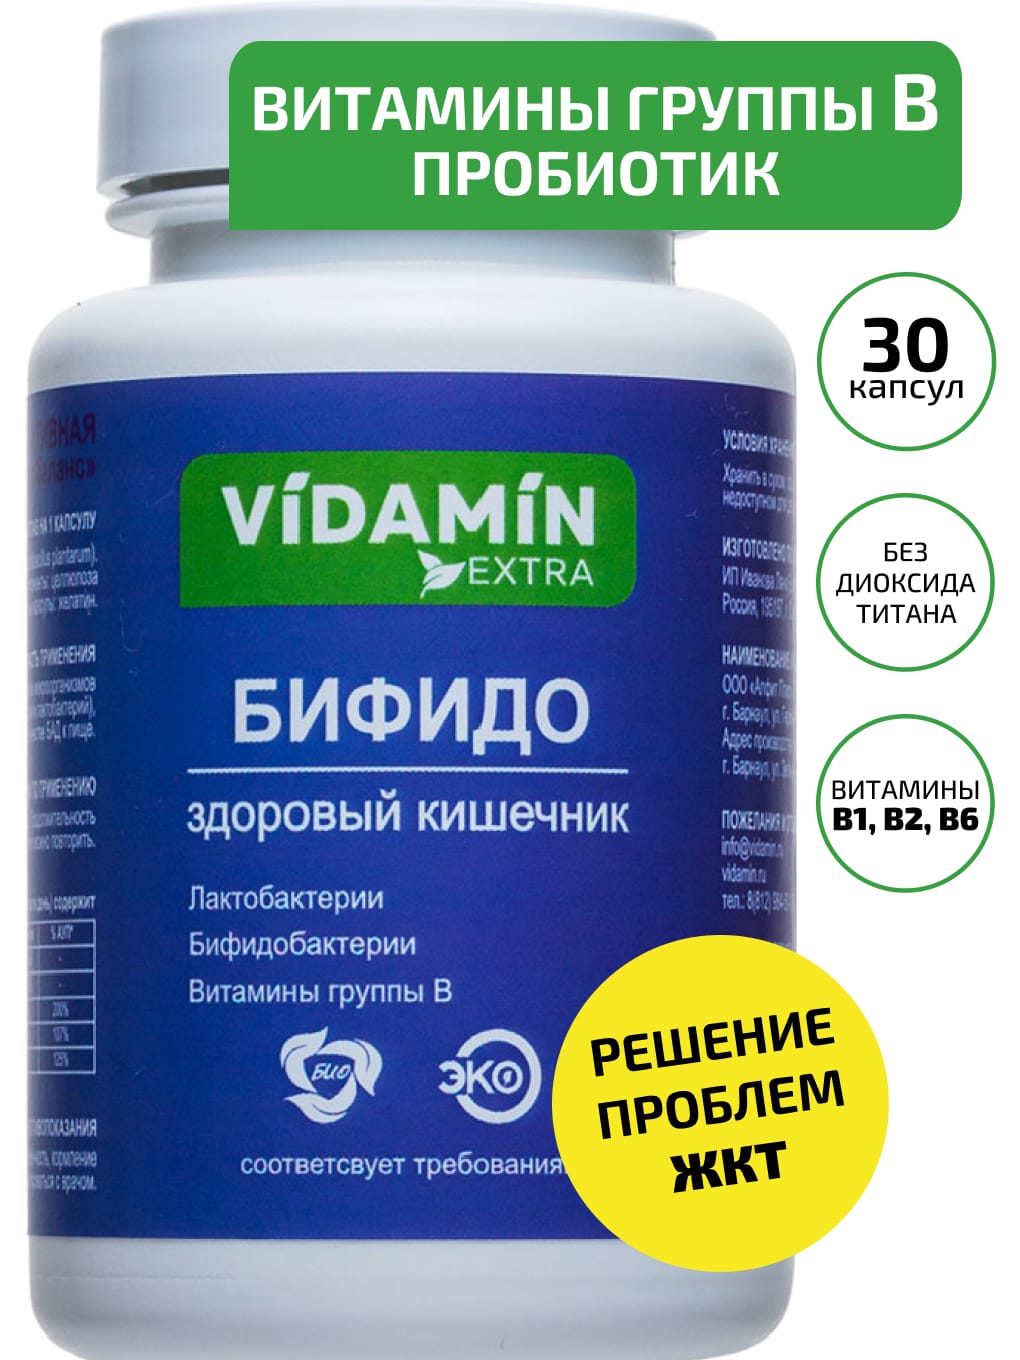 Витамины группы В и пробиотики VIDAMIN EXTRA 30 капсул - фото 1